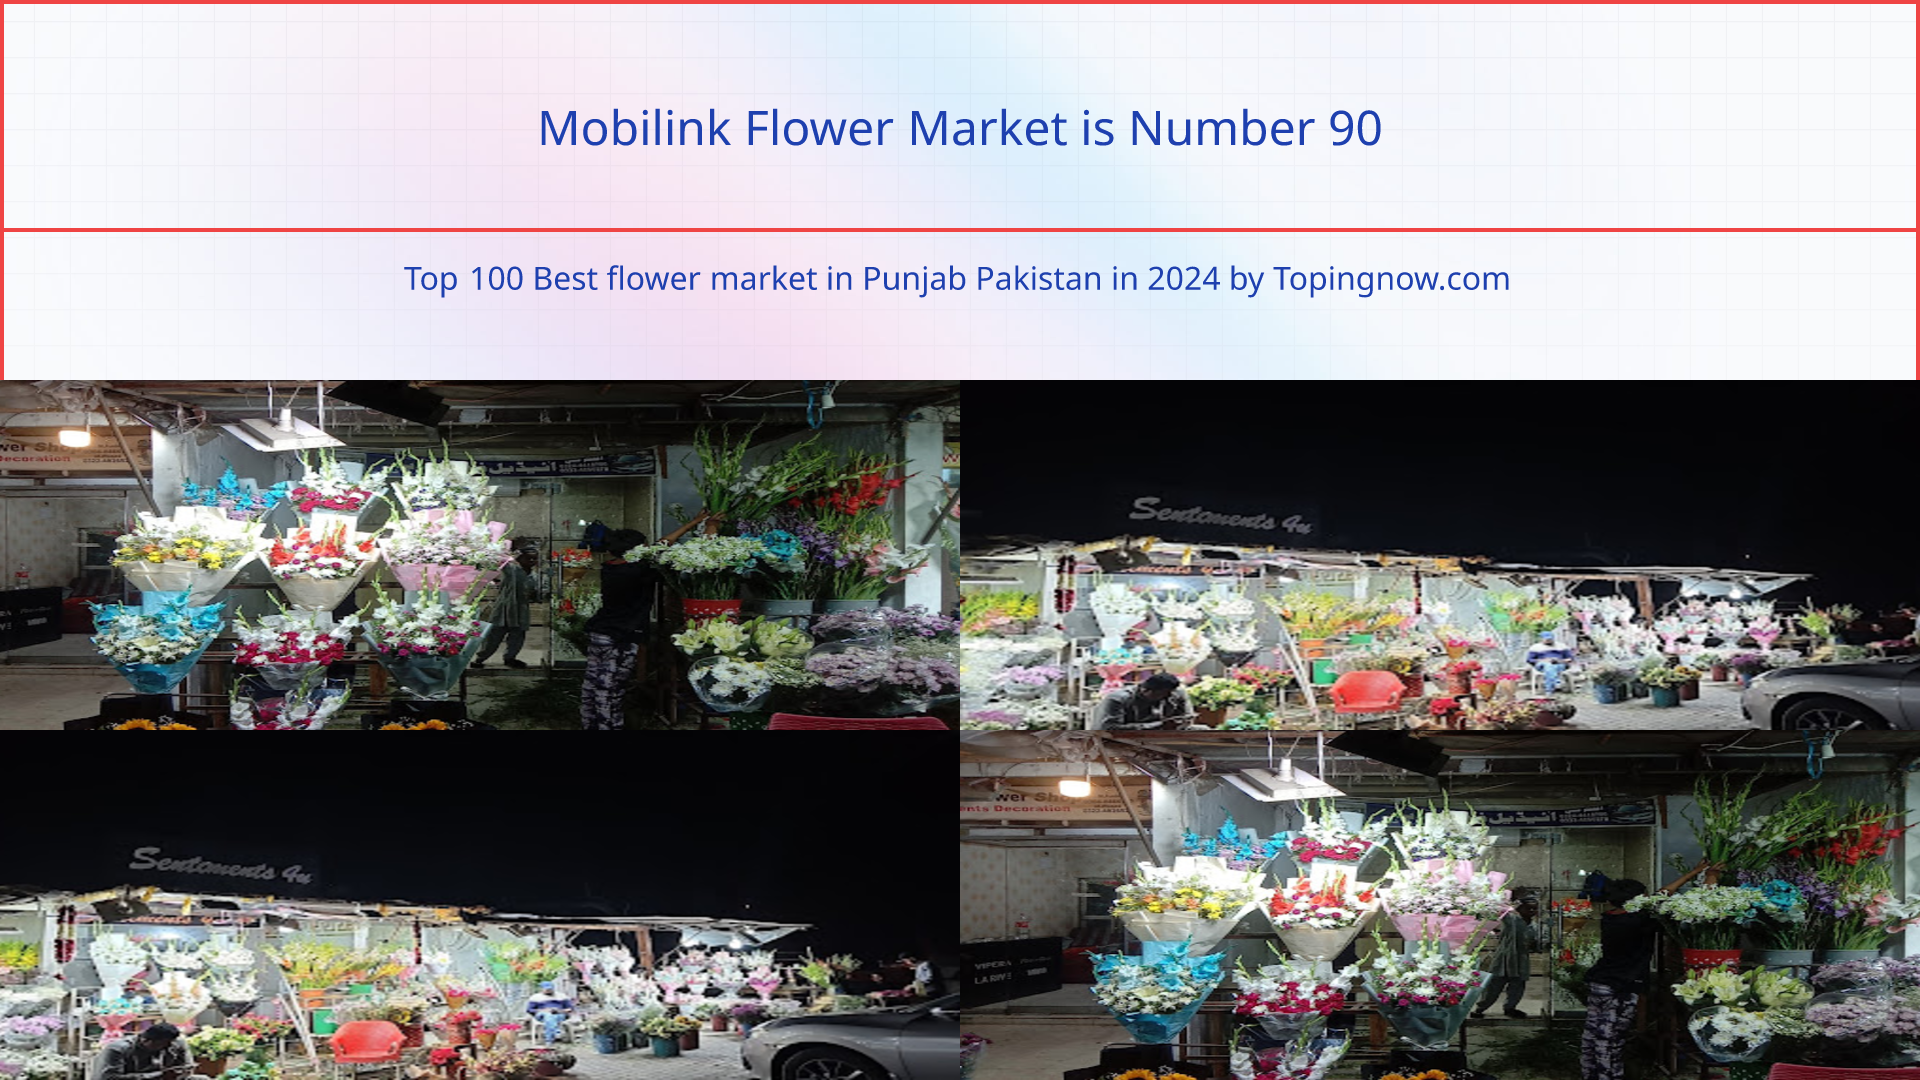 Mobilink Flower Market: Top 100 Best flower market in Punjab Pakistan in 2024